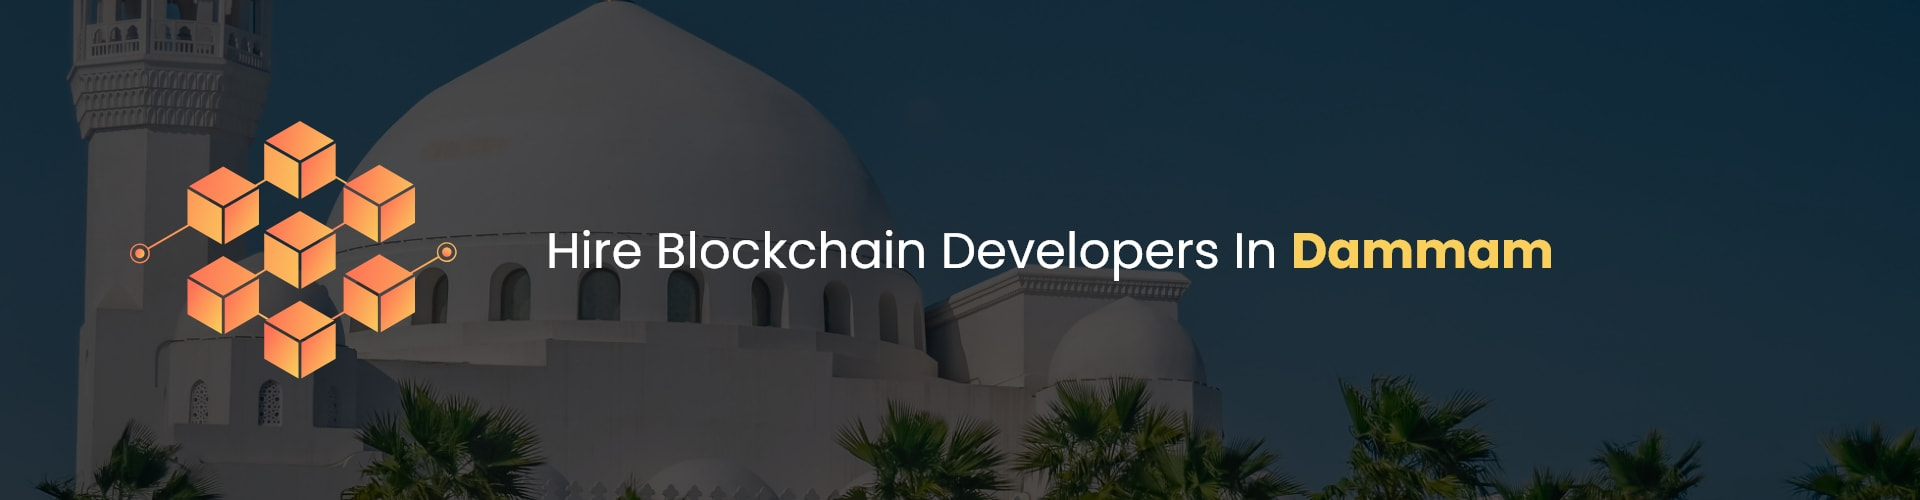 hire blockchain developers in dammam